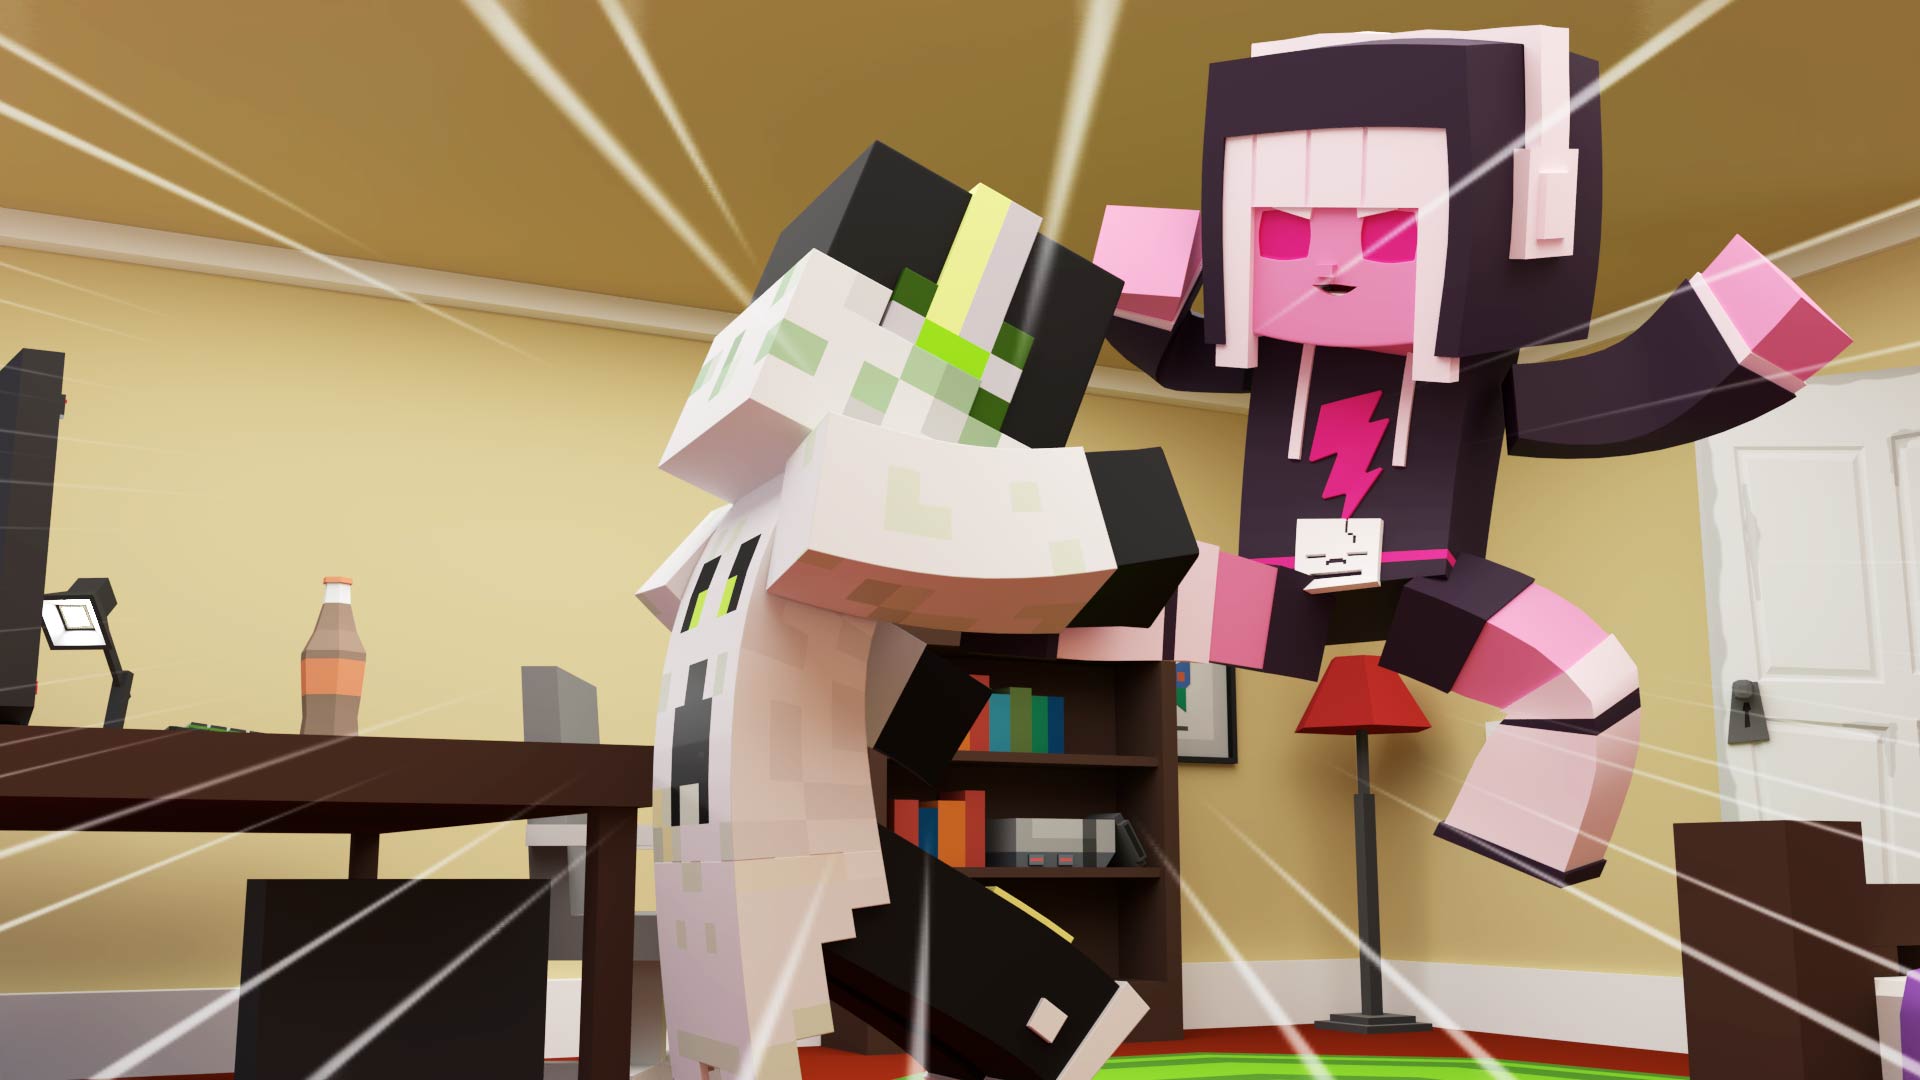 Minecraft_Action_Animation_Zeichentrickfiguren_Max_Karate_Punch_Kick_Room_Toys_Cartoon